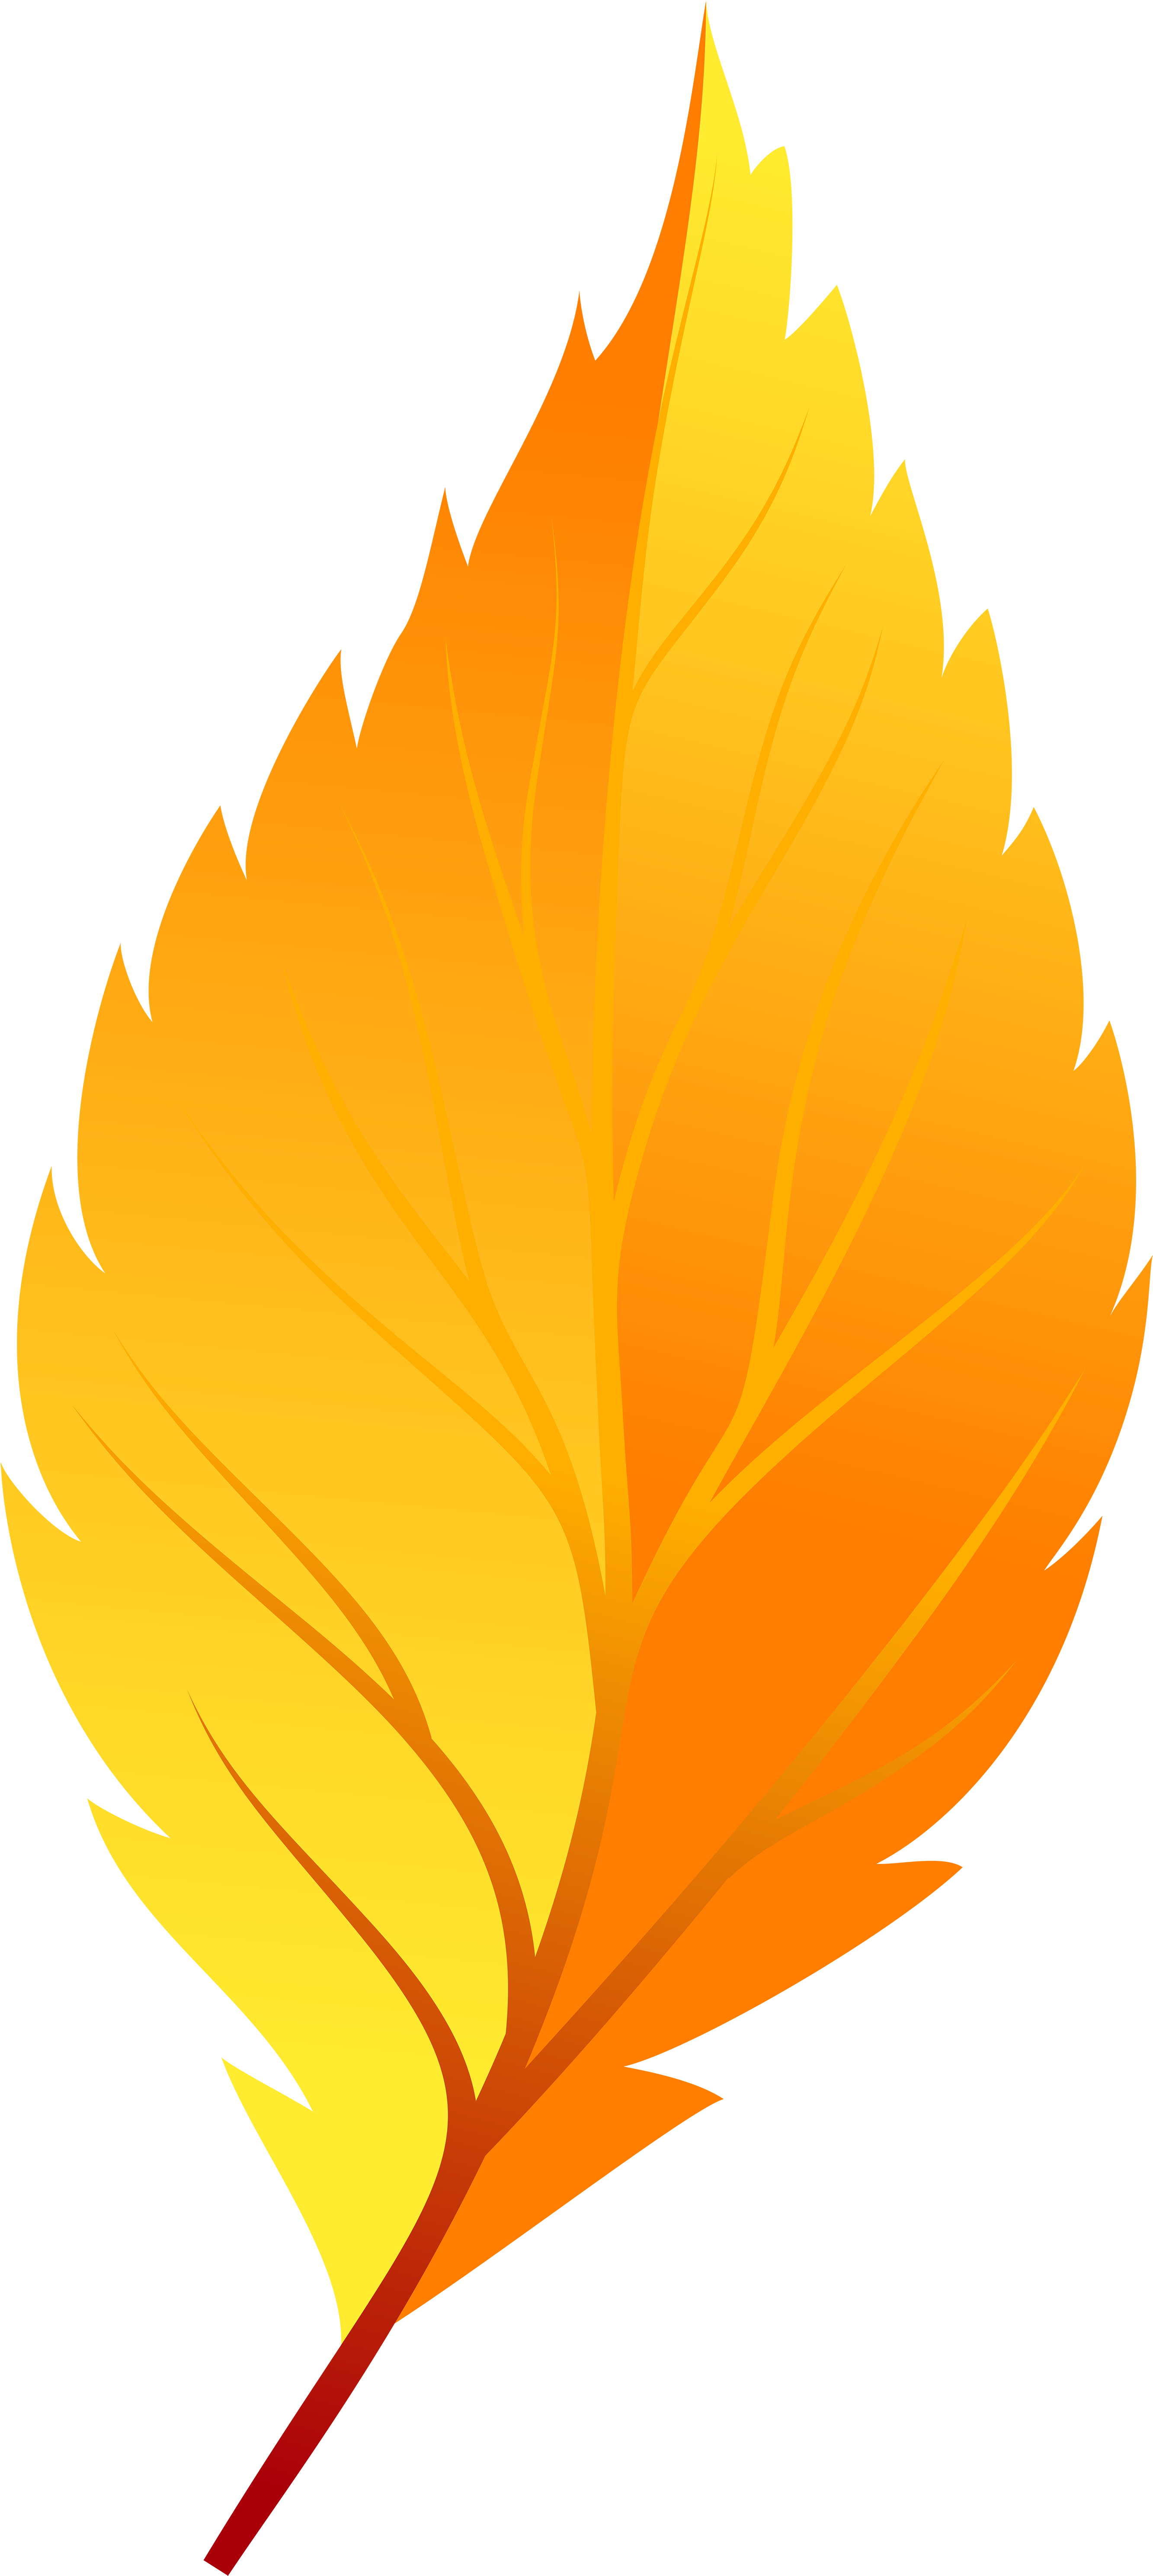 Yellow Autumn Leaf Png Clip Art - Transparent Background Autumn Leaf Clip Art (2741x6000), Png Download